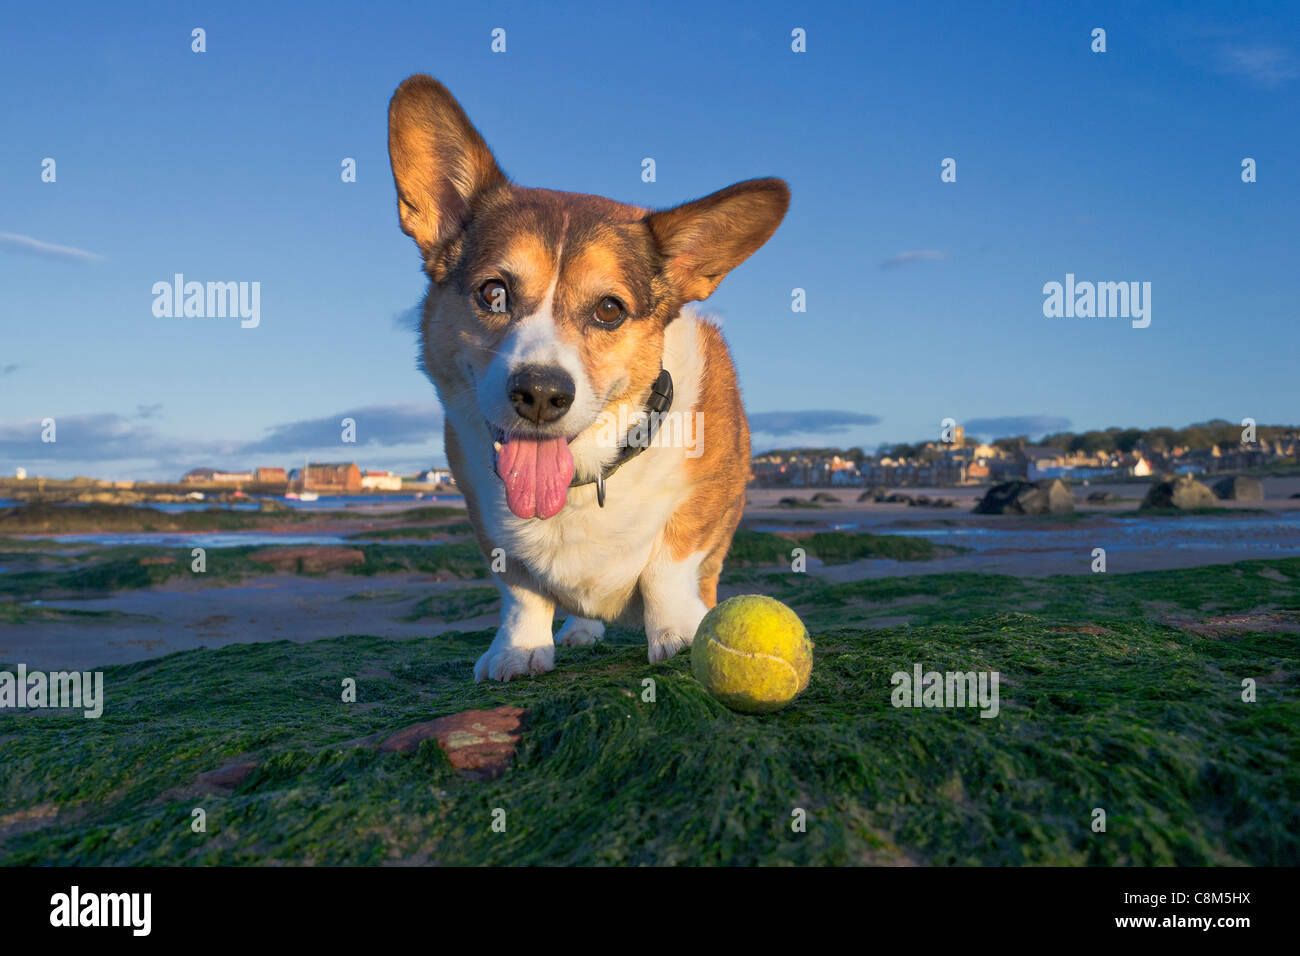 Corgi Cardigan homme (chien) jouant avec une balle de tennis sur la plage. Banque D'Images